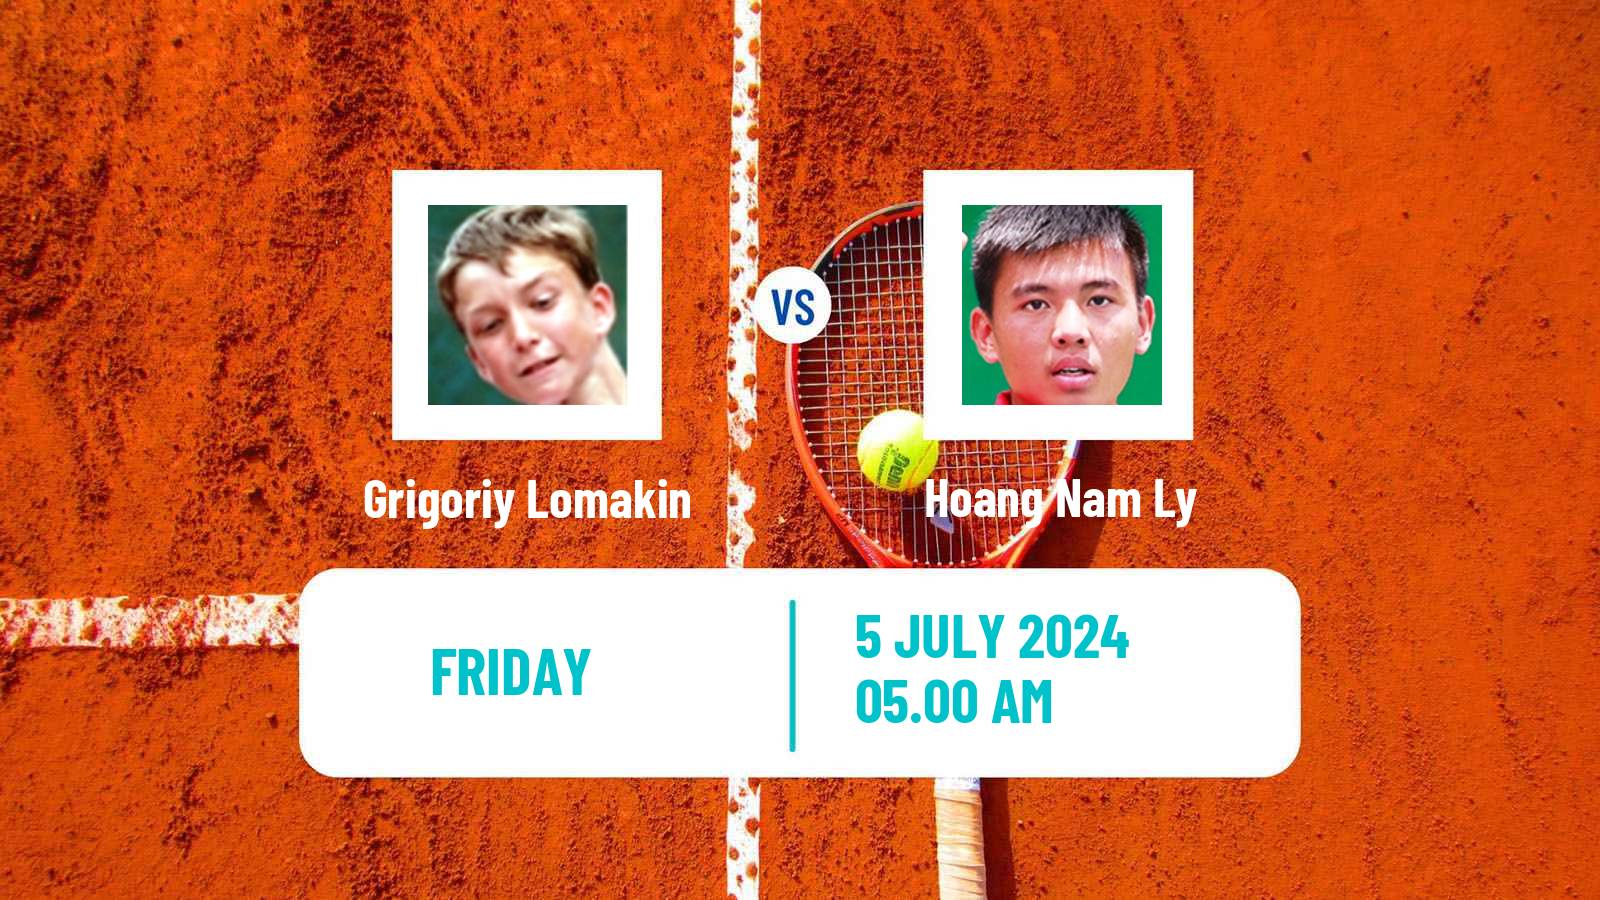 Tennis ITF M15 Tianjin 2 Men Grigoriy Lomakin - Hoang Nam Ly